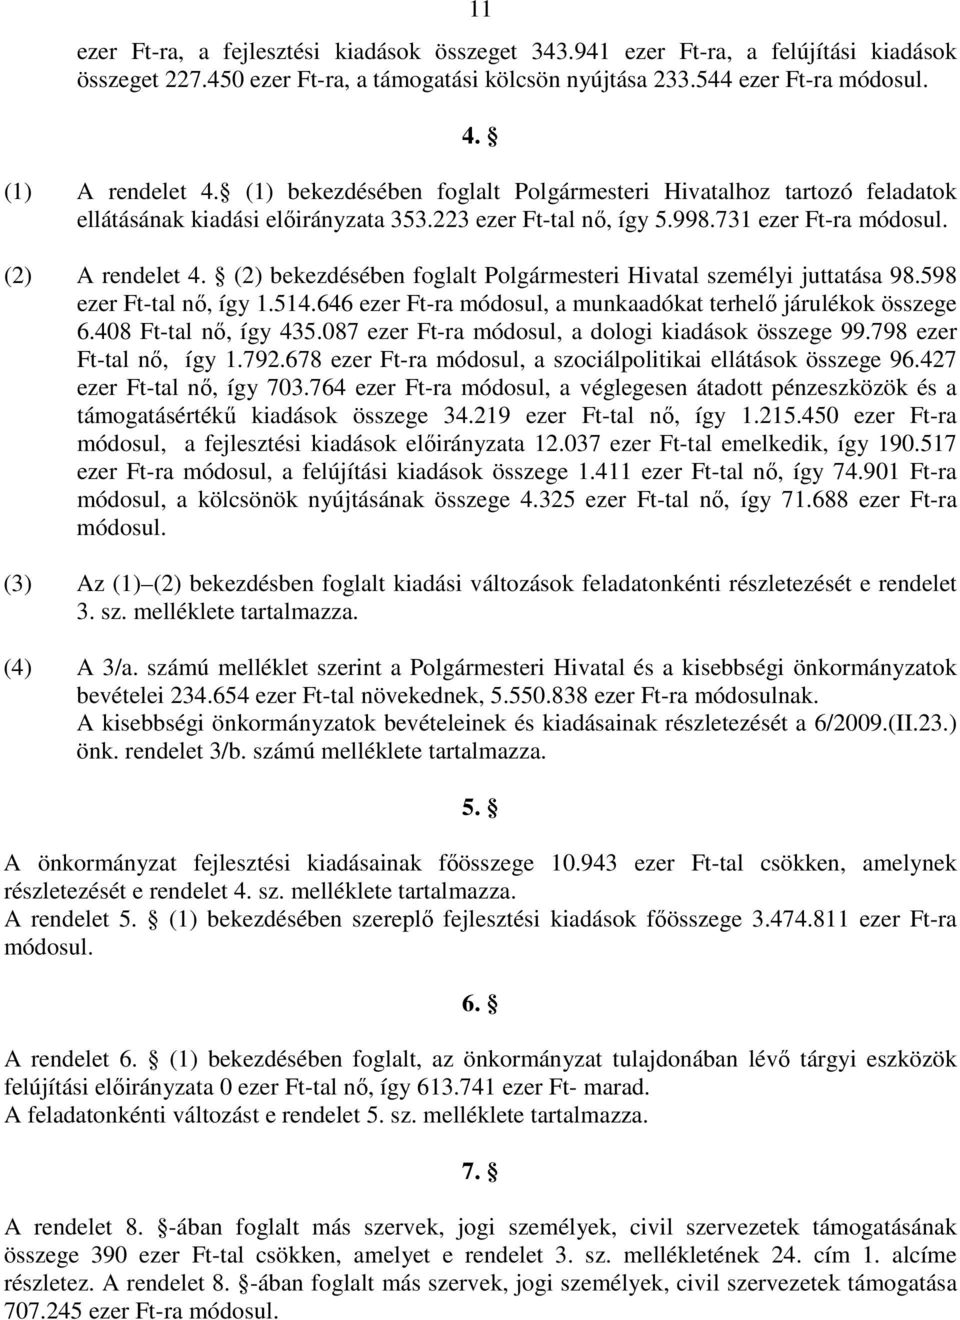 (2) bekezdésében foglalt Polgármesteri Hivatal személyi juttatása 98.598 ezer Ft-tal nı, így 1.514.646 ezer Ft-ra módosul, a munkaadókat terhelı járulékok összege 6.408 Ft-tal nı, így 435.